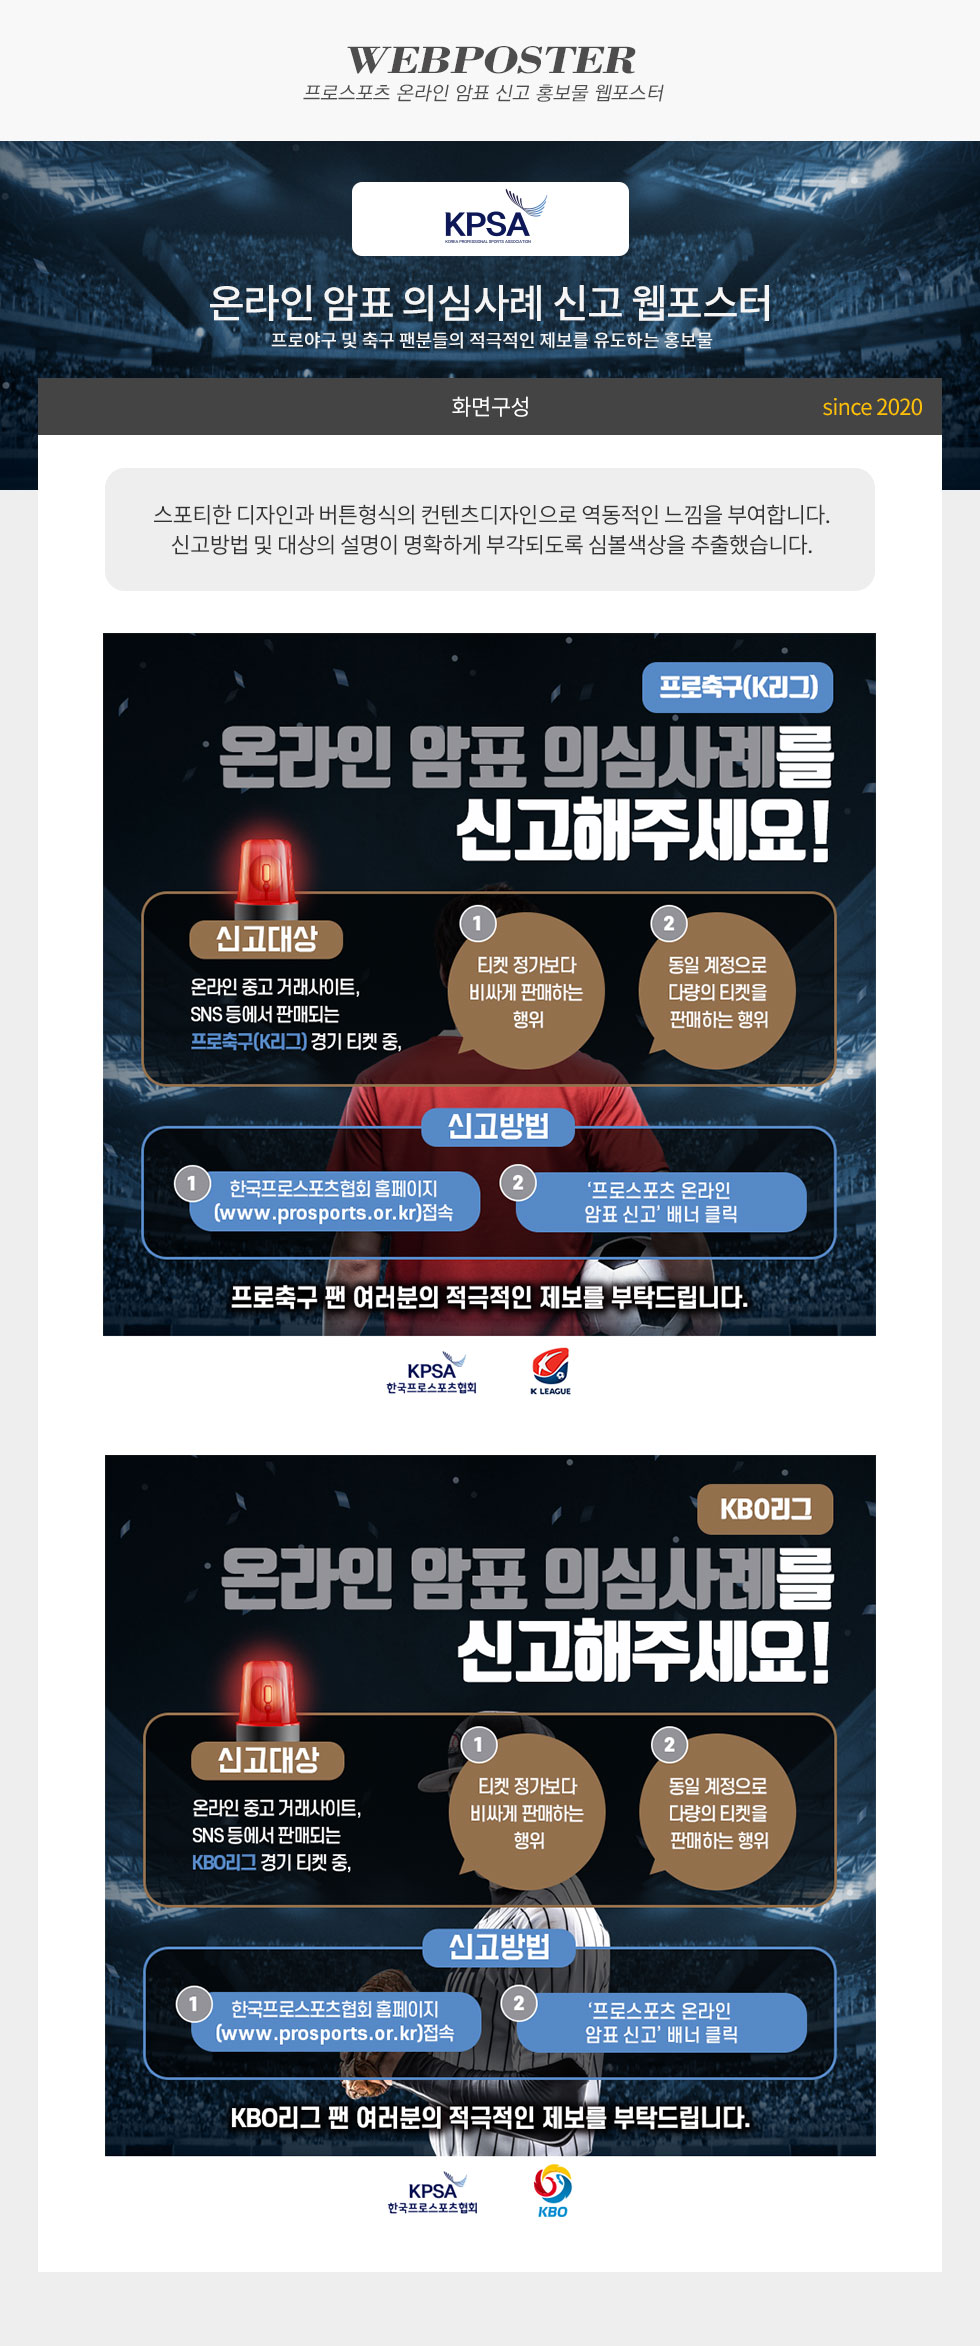 [디자인펌킨 | 온라인 암표 의심사례 신고 웹포스터] #한국프로스포츠협회 #K리그 #KBO #웹포스터 #디자인 #k리그 #kbo | 포트폴리오 상세이미지